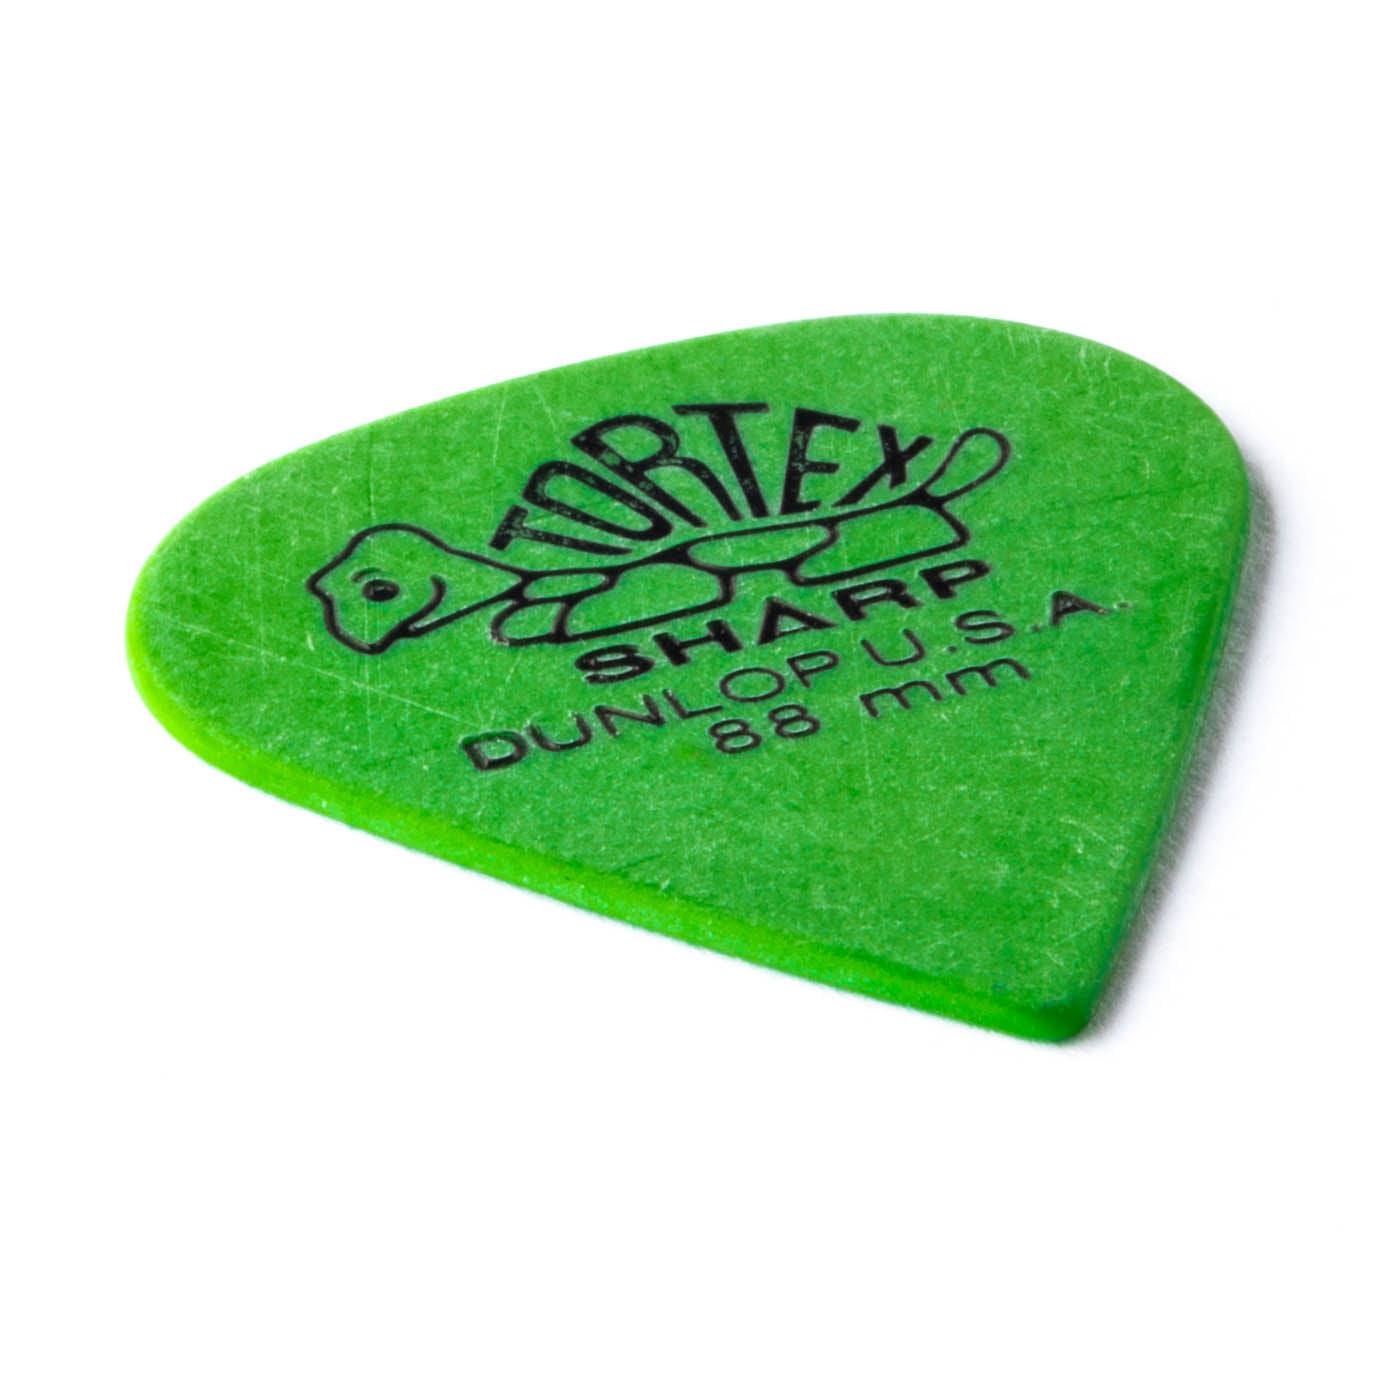 Dunlop 412 Tortex® Sharp Pick,  0.88MM